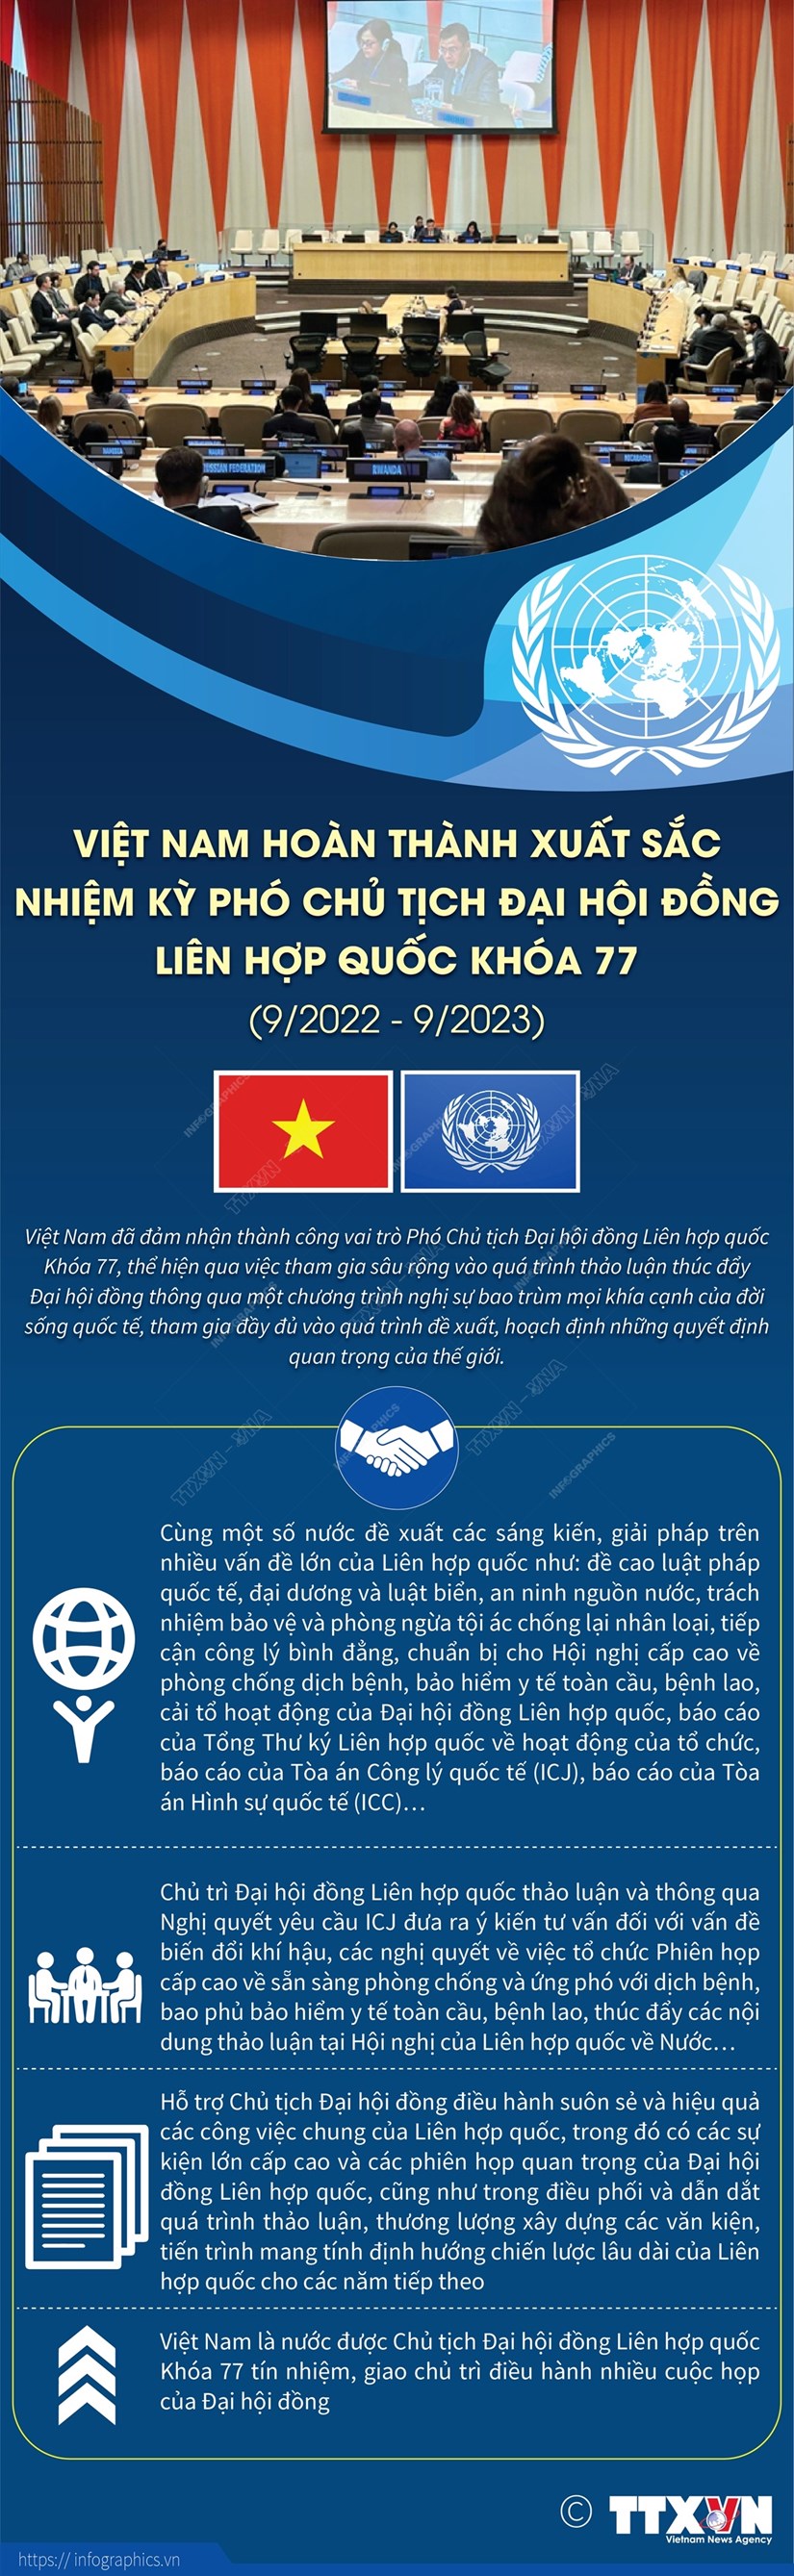 Việt Nam hoàn thành xuất sắc nhiệm kỳ Phó Chủ tịch ĐHĐ LHQ khóa 77